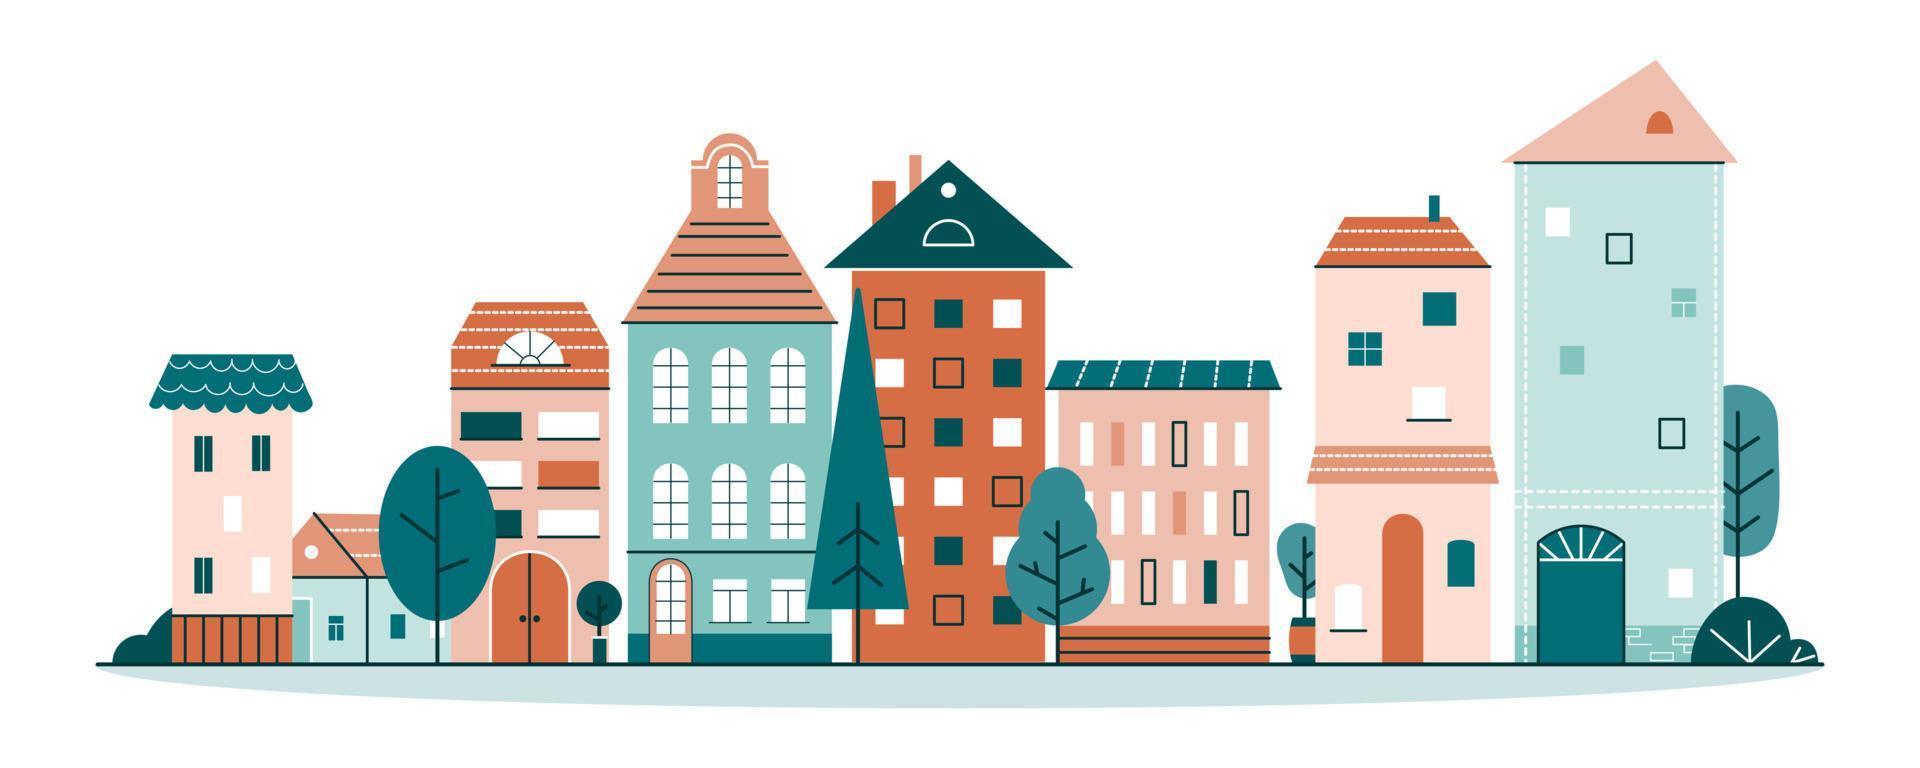 söt stad med små små hus i skandinavisk stil. gata i liten stad med mysiga hem och träd. platt tecknad vektorillustration isolerad på vit bakgrund vektor